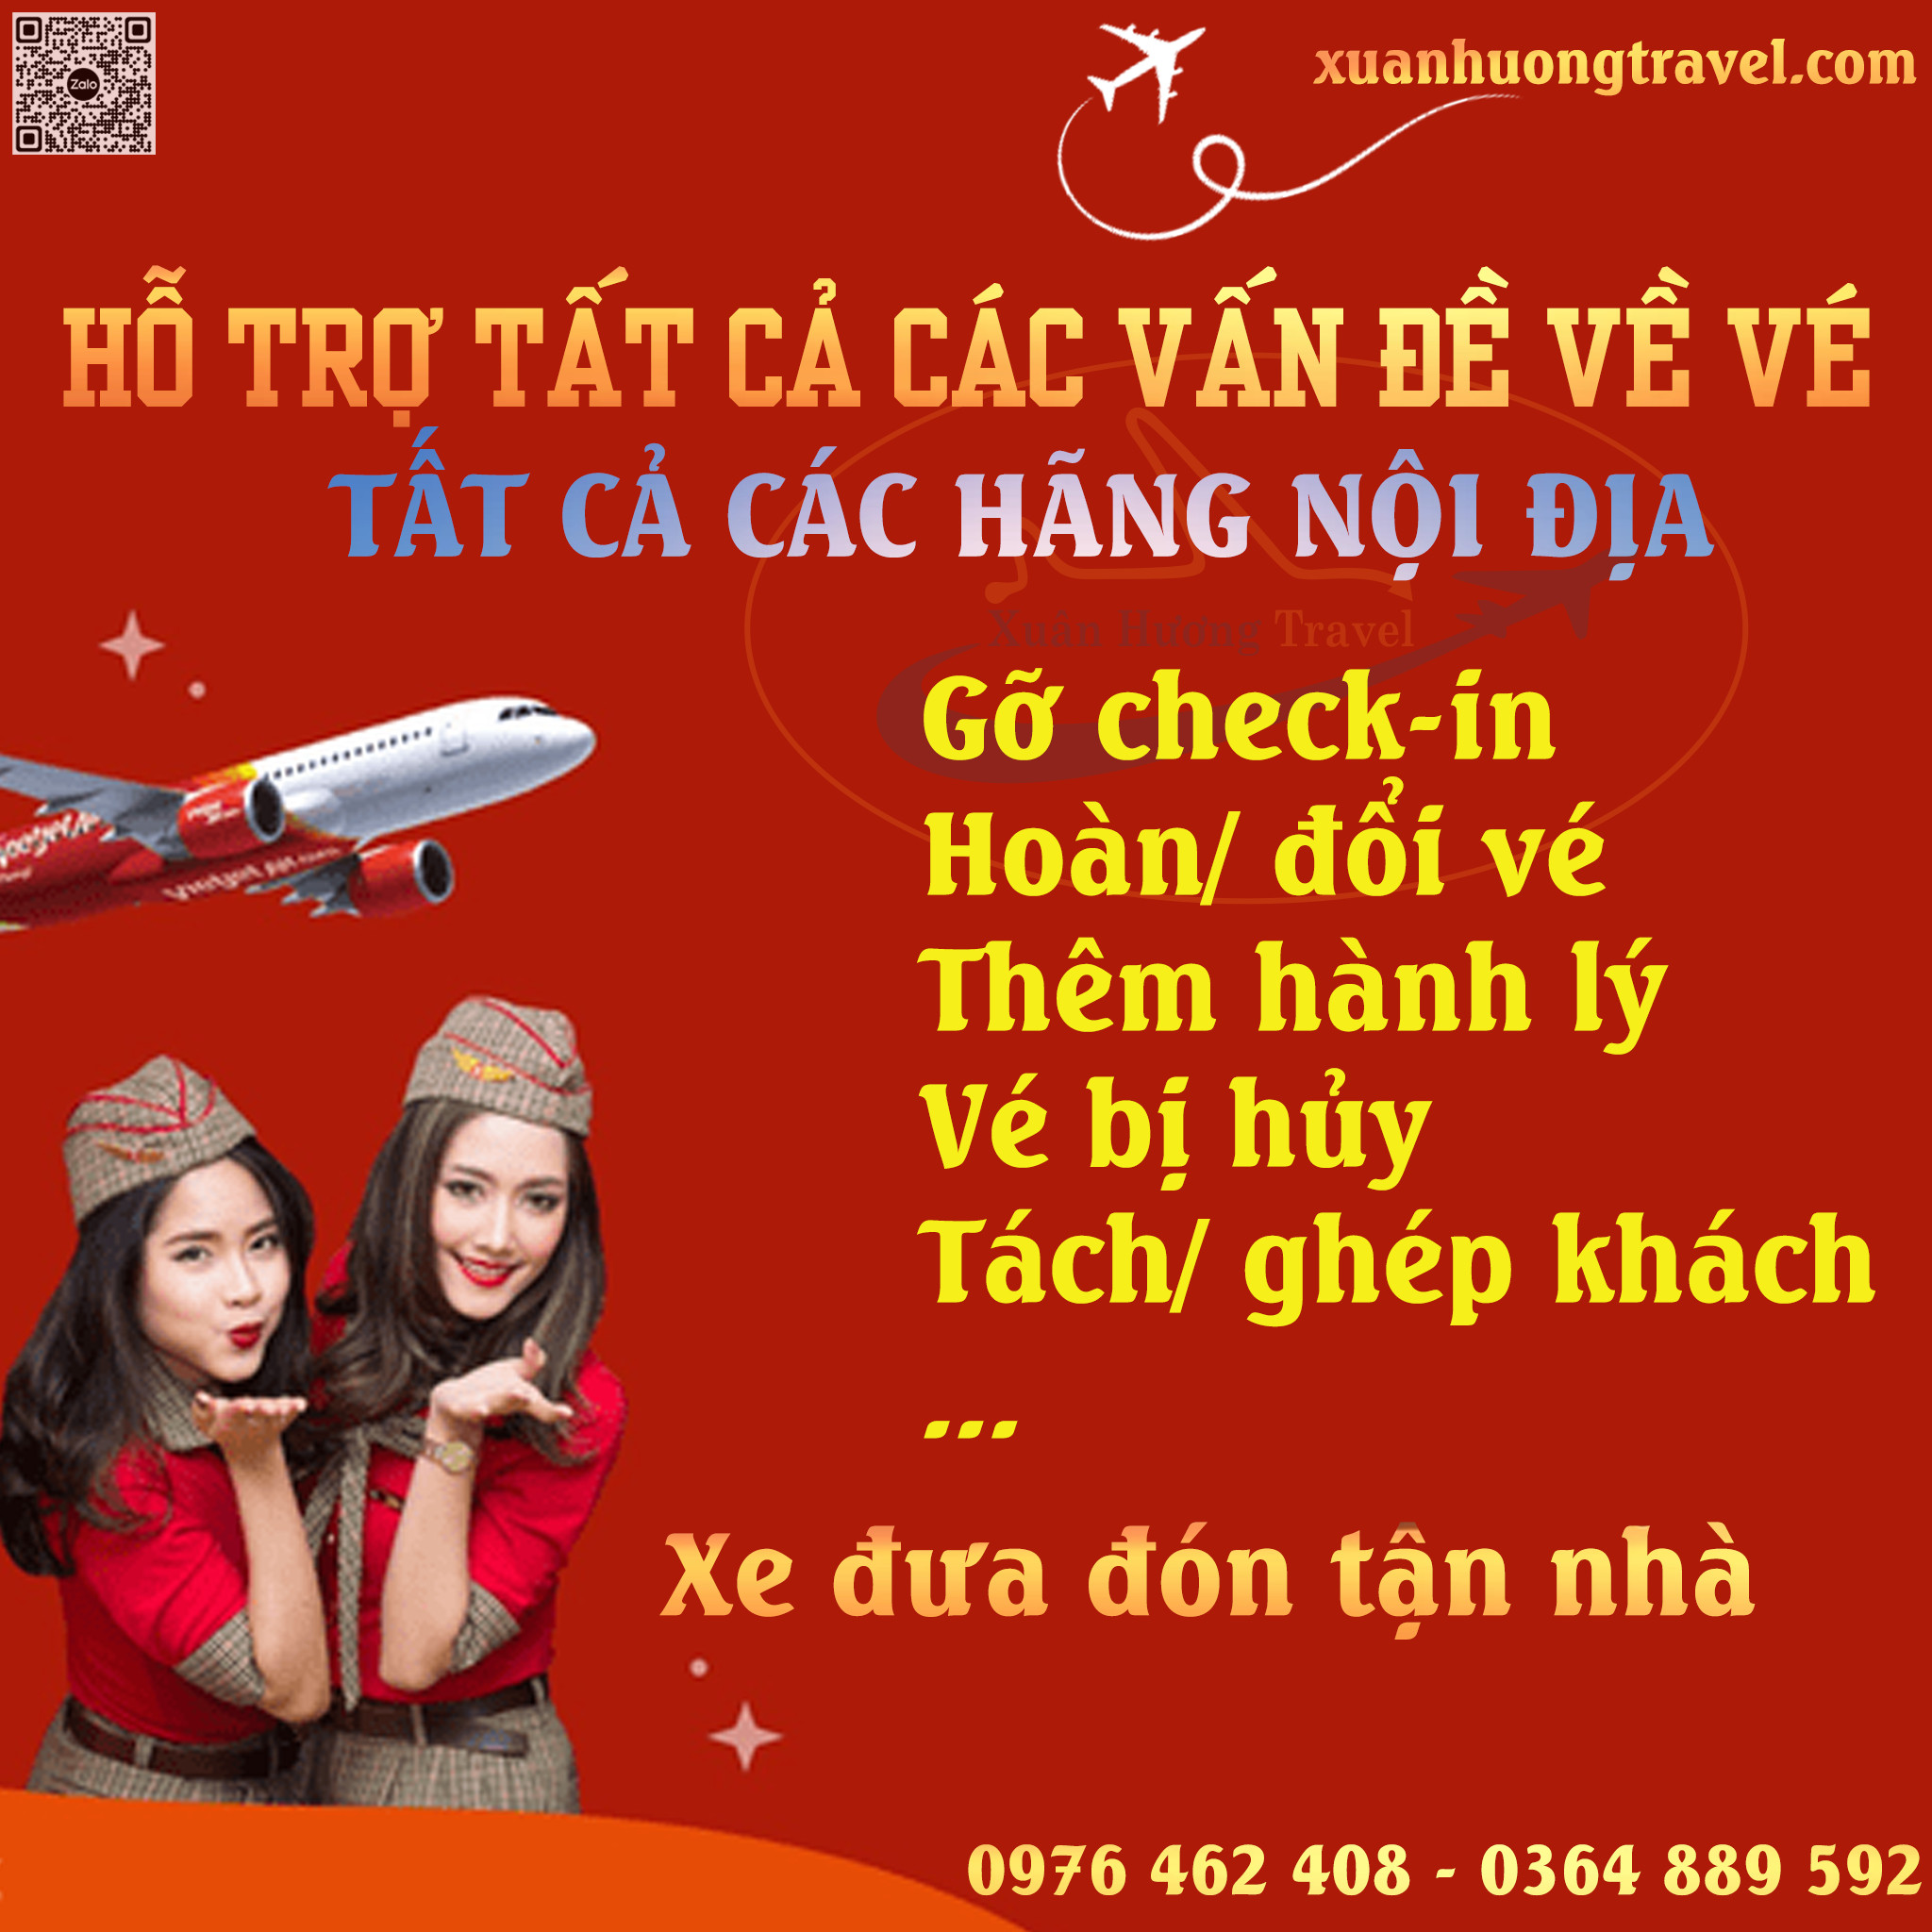 Website phòng vé Xuân Hương Travel